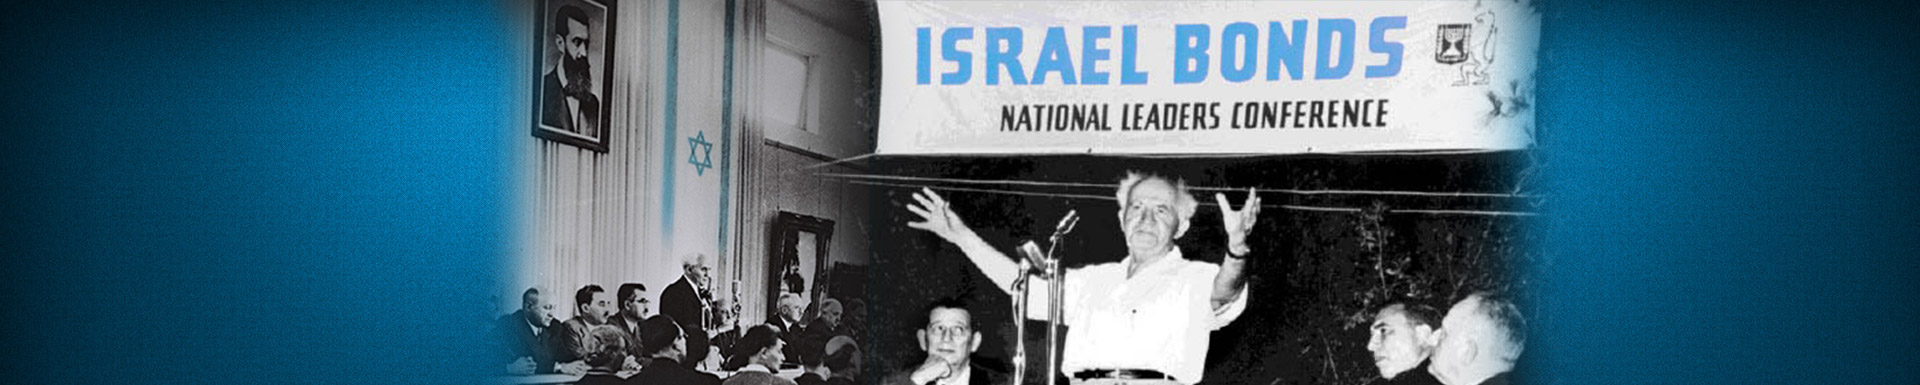 About Israel Bonds David Ben-Gurion at Israel Bonds National Leaders Conference